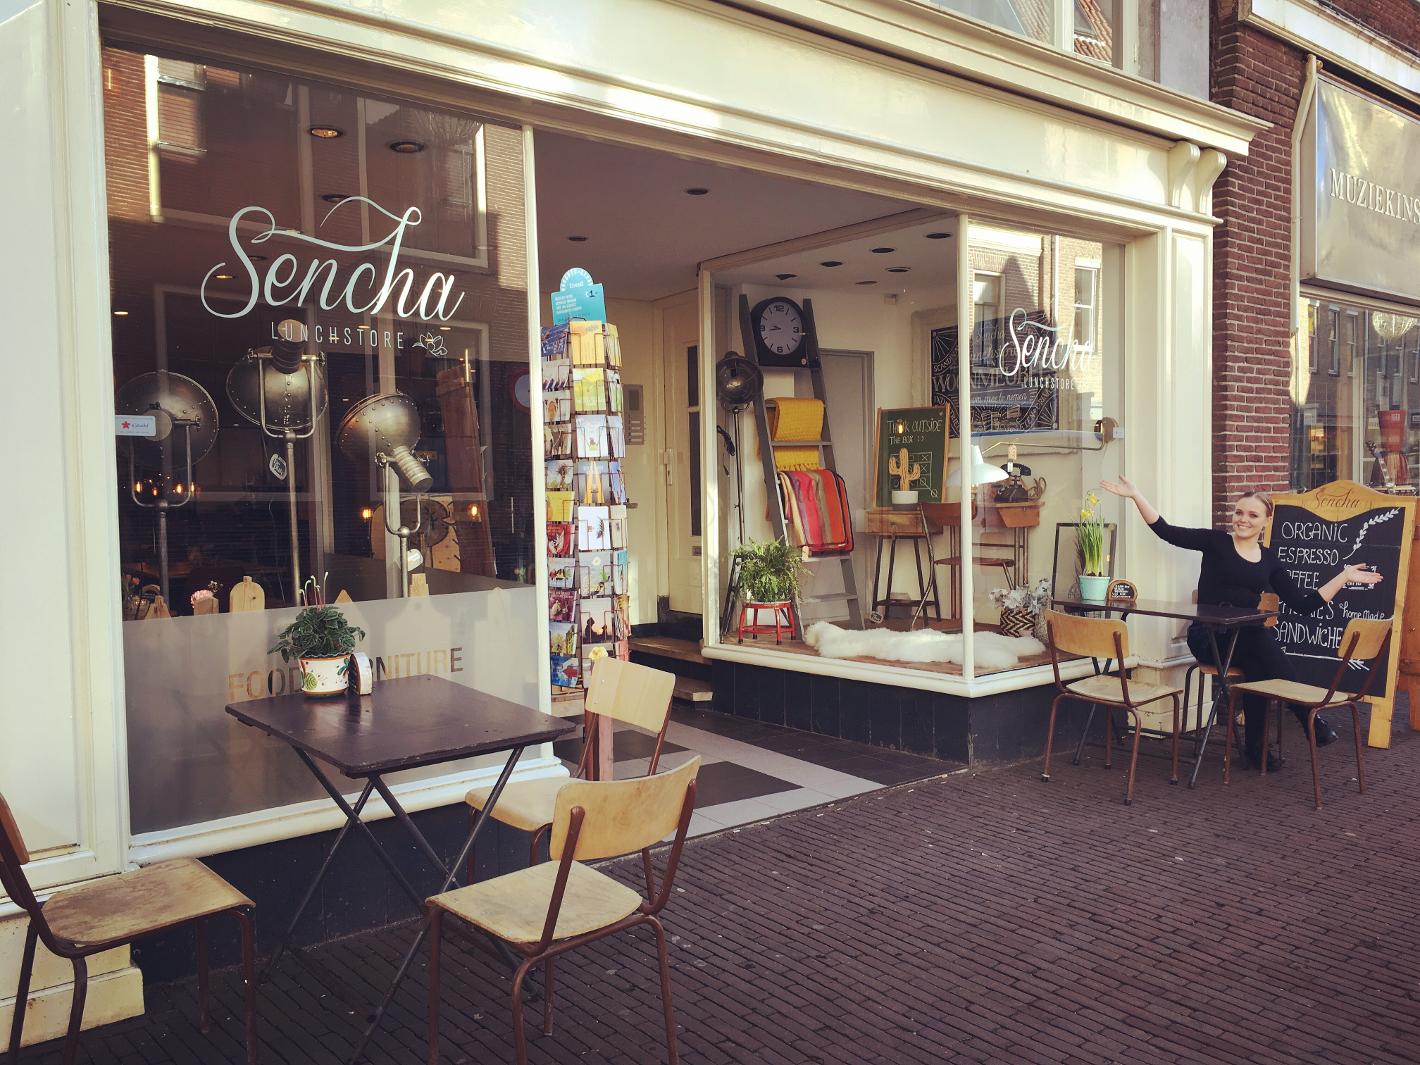 Foto Sencha Lunchstore in Alkmaar, Essen & Trinken, Kaffee, tee und kuchen, Mittagessen - #1